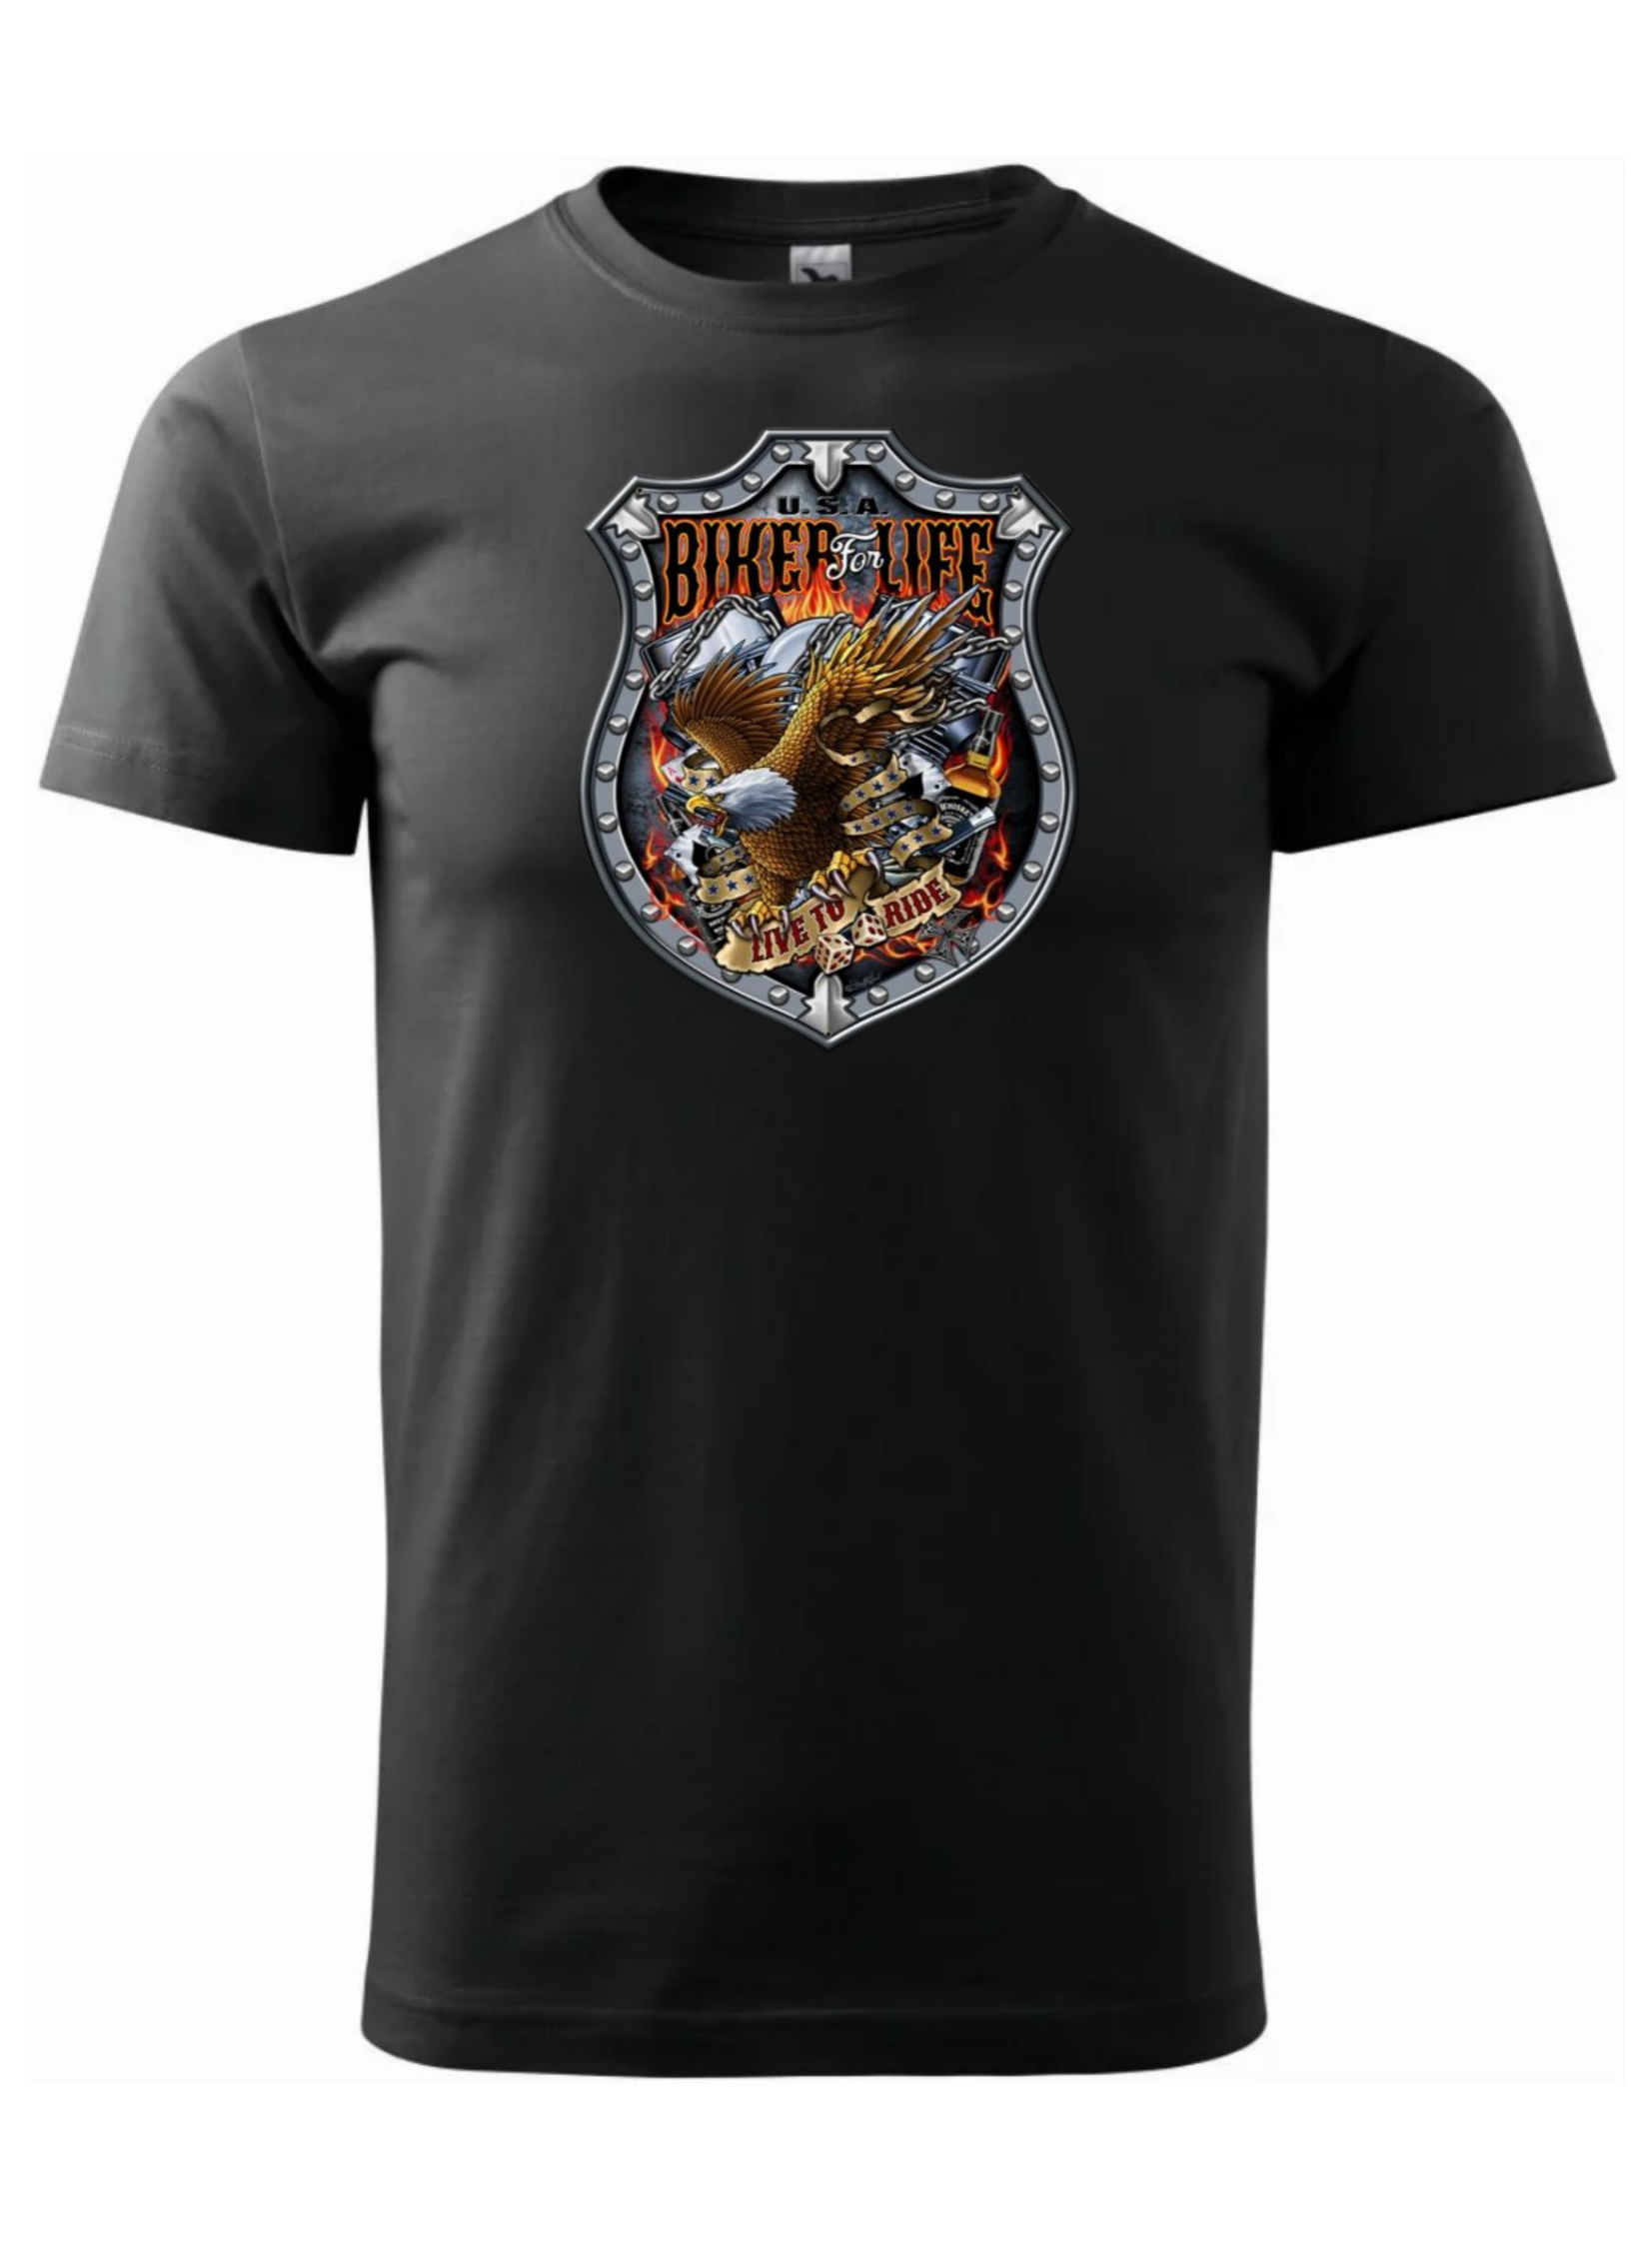 Pánské tričko s potiskem značky Harley Davidson 46